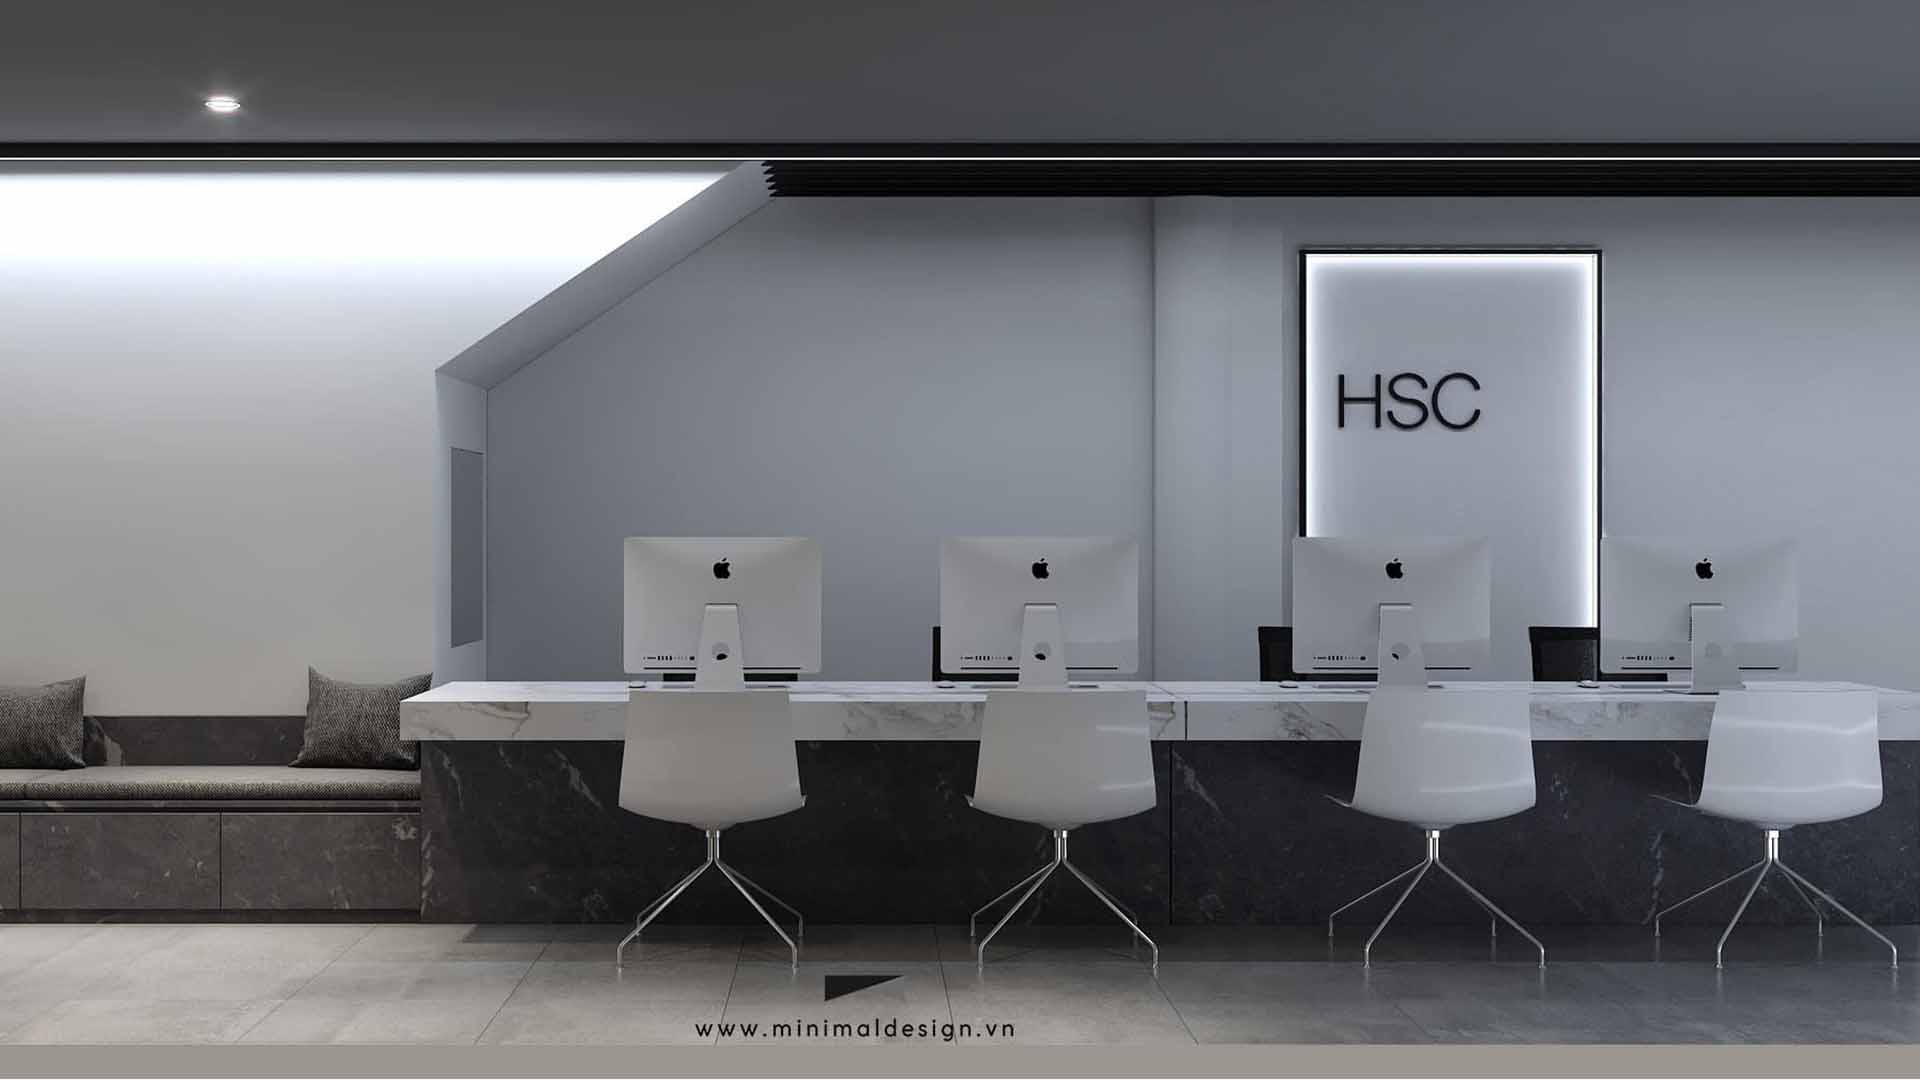 thiết kế văn phòng HSC đã tạo nên không gian làm việc tối giản nhưng vô cùng sang trọng, từ màu sắc đến vật liệu đều mang đến sự thống nhất trong từng khu vực